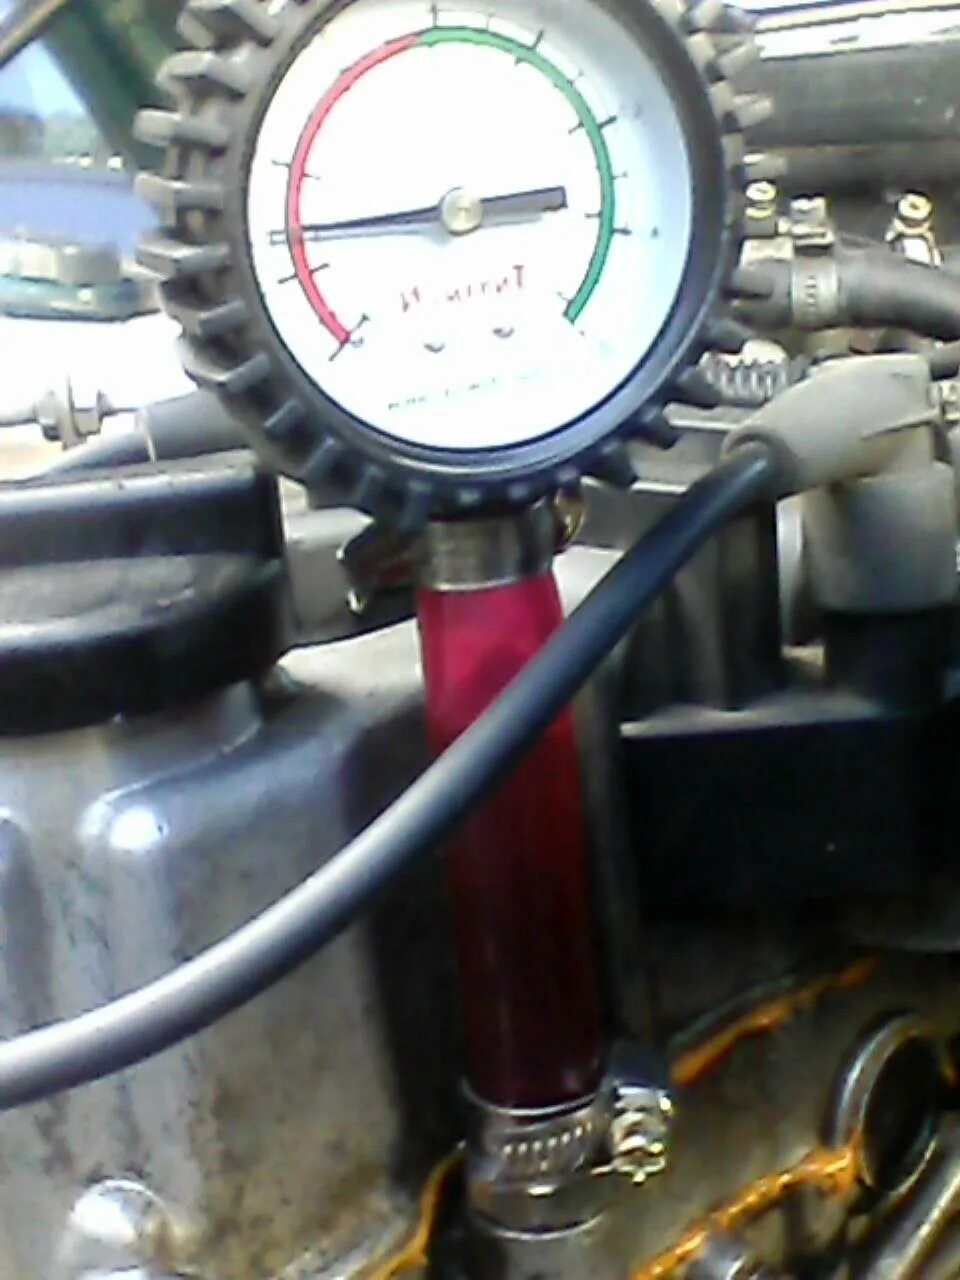 Масляный манометр ВАЗ 2112. Замер давления масла 2112 16кл. Манометр для измерения давления масла в двигателе ВАЗ 2112. ВАЗ 2112 манометр давления масла. Как увеличить давление масла